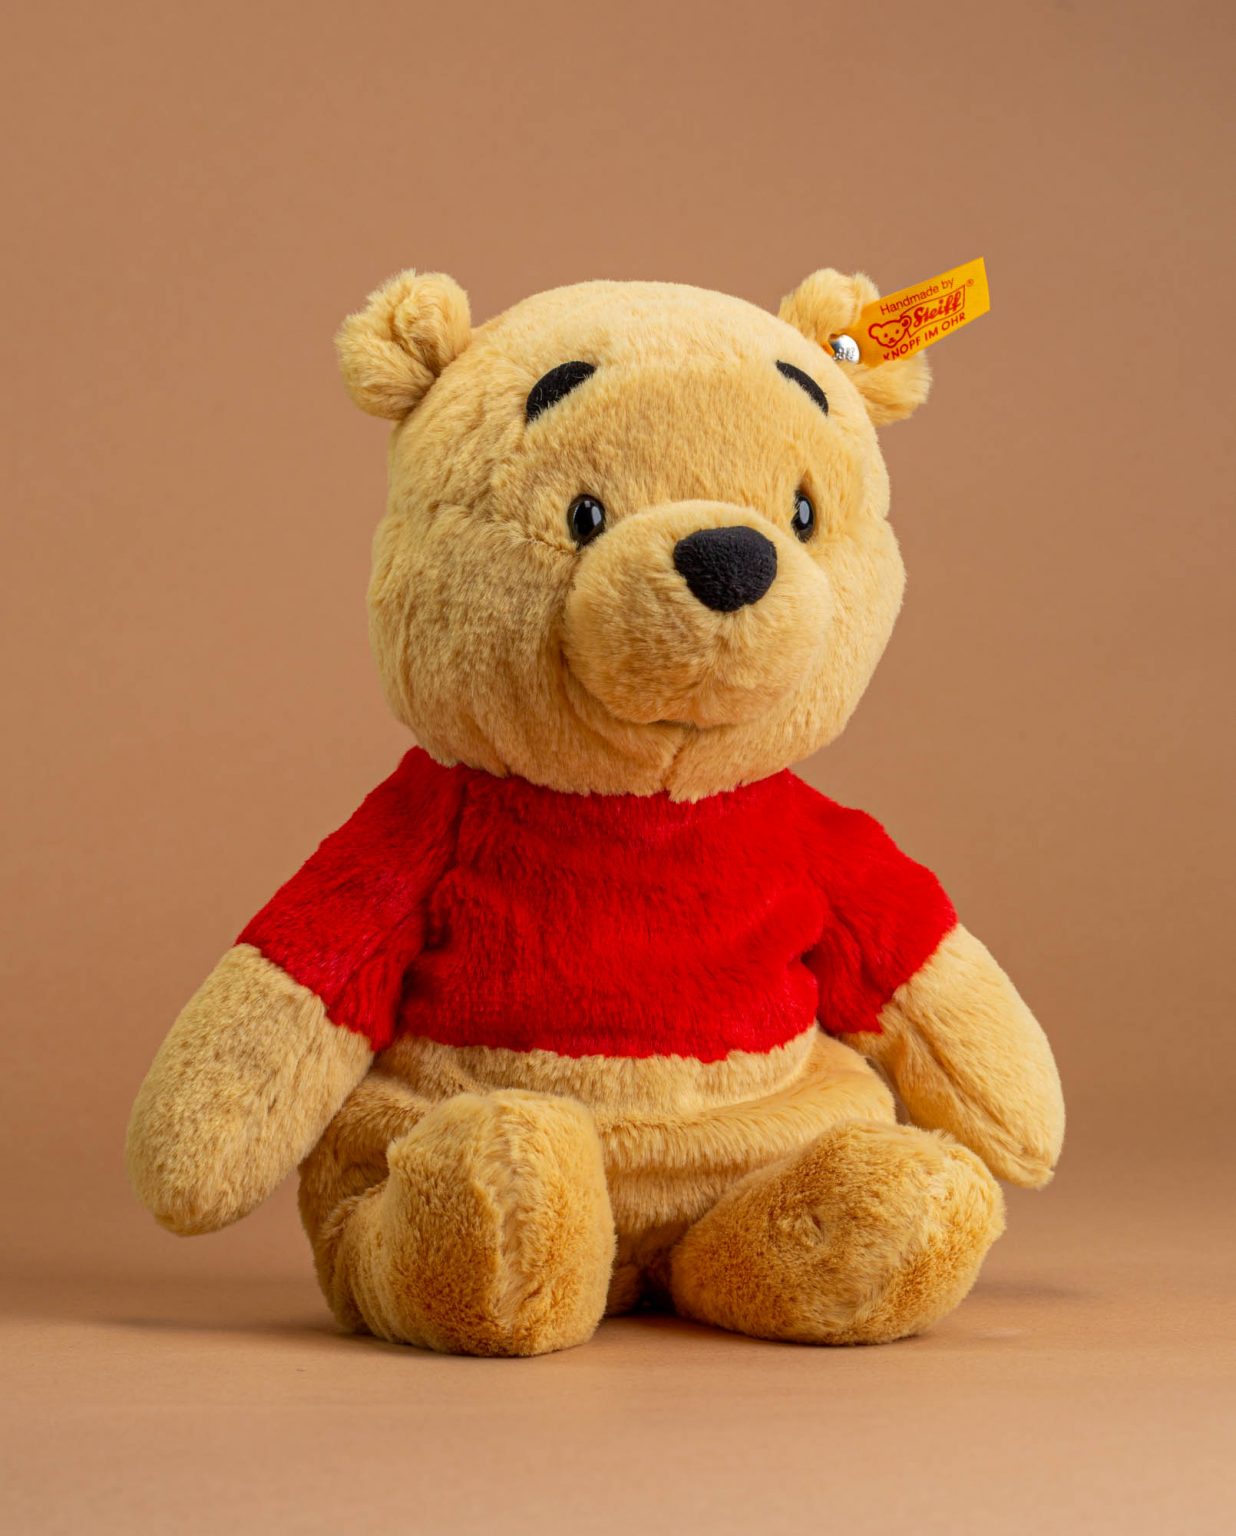 Winnie the Pooh by Steiff - Send A Cuddly